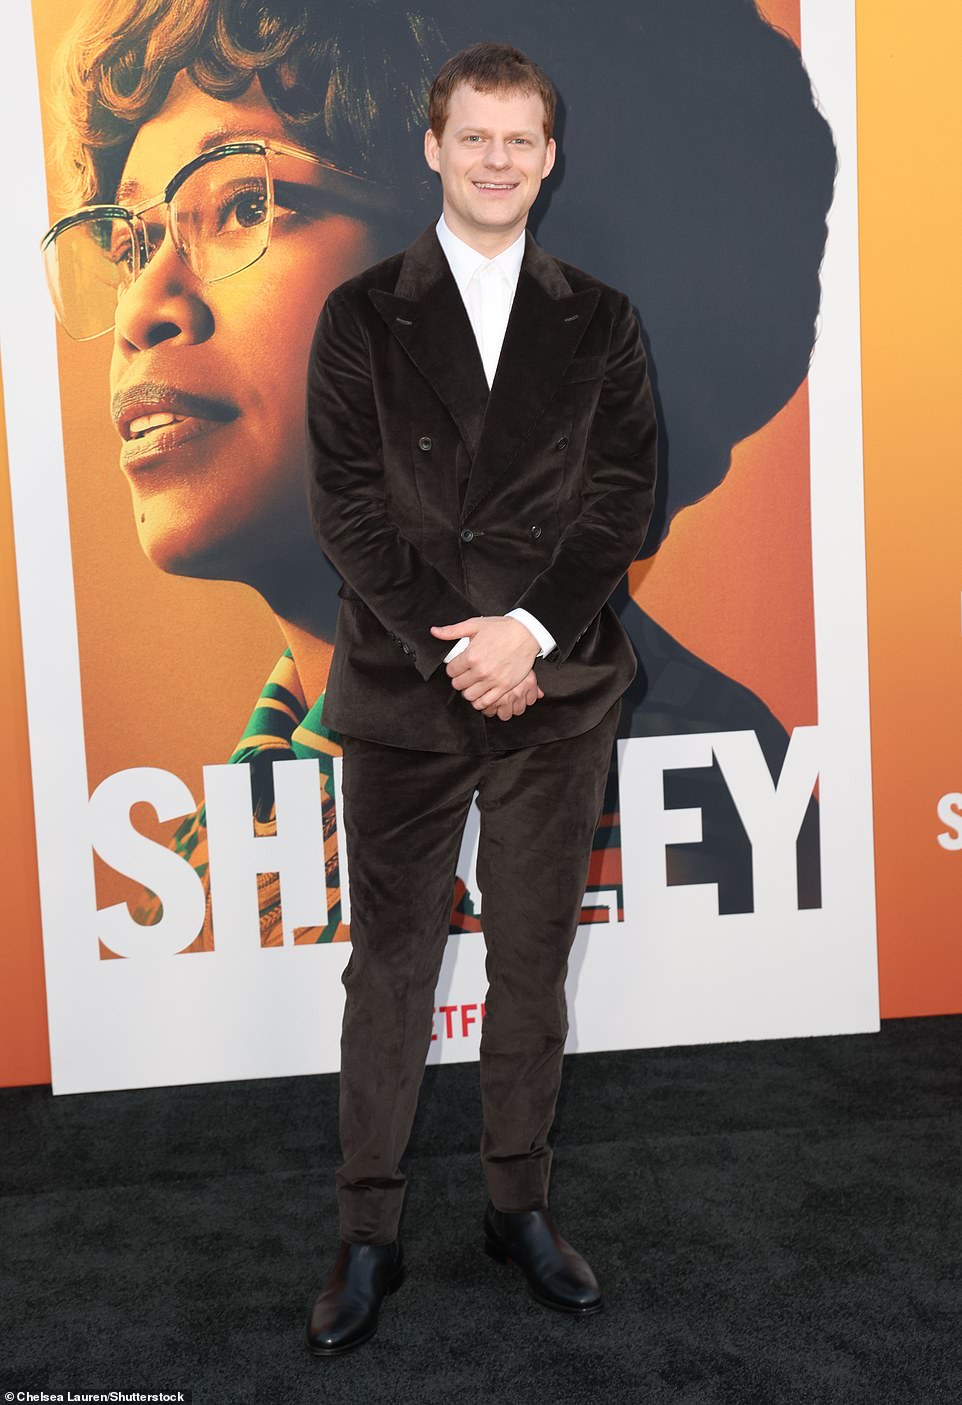 Лукас Хеджес, который играет Роберта Готлиба, демонстрирует шикарную фигуру в коричневом бархатном костюме и белой рубашке на пуговицах.